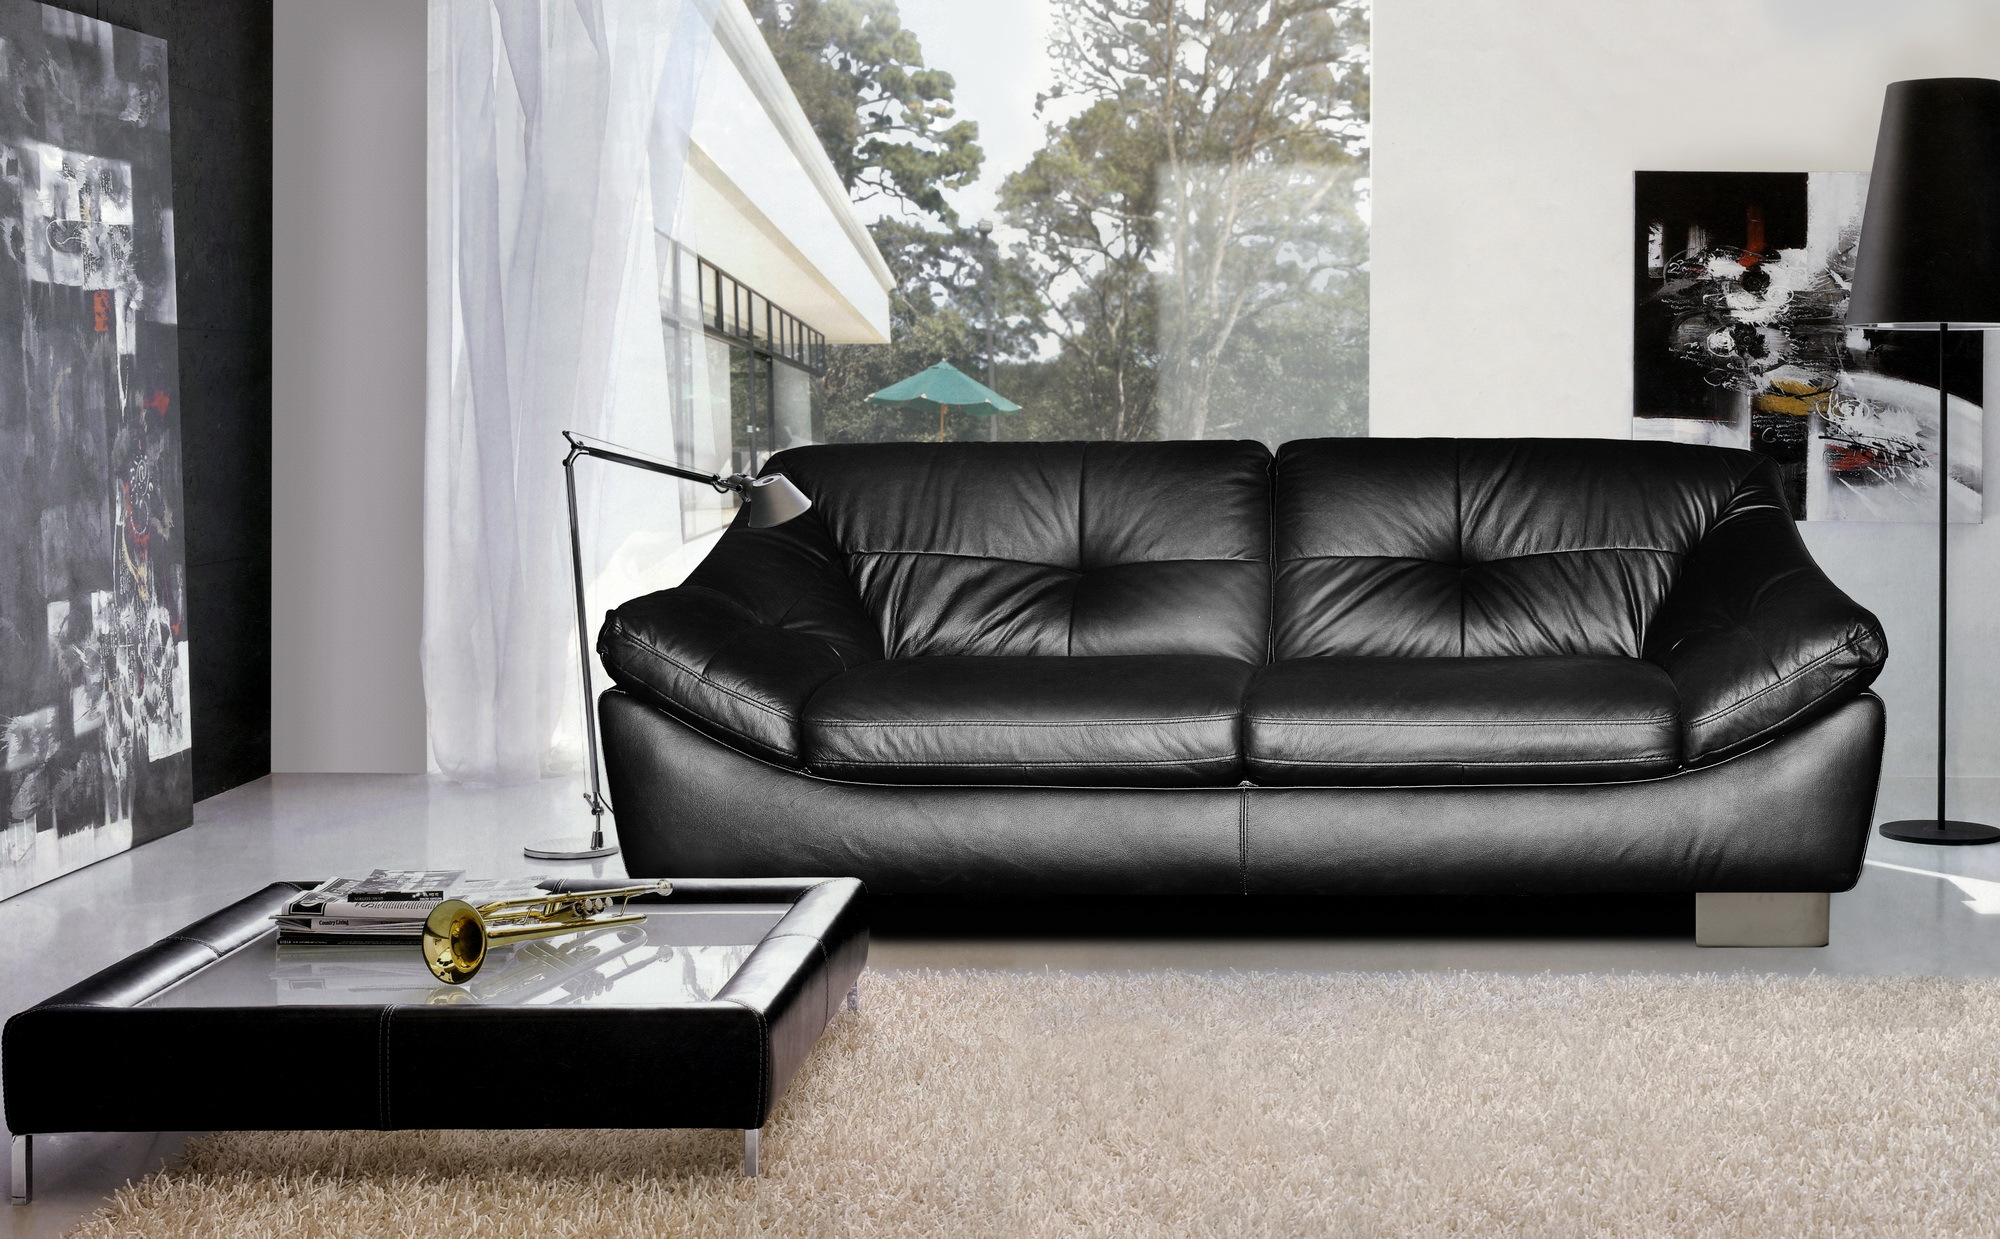 Черный диван в интерьере